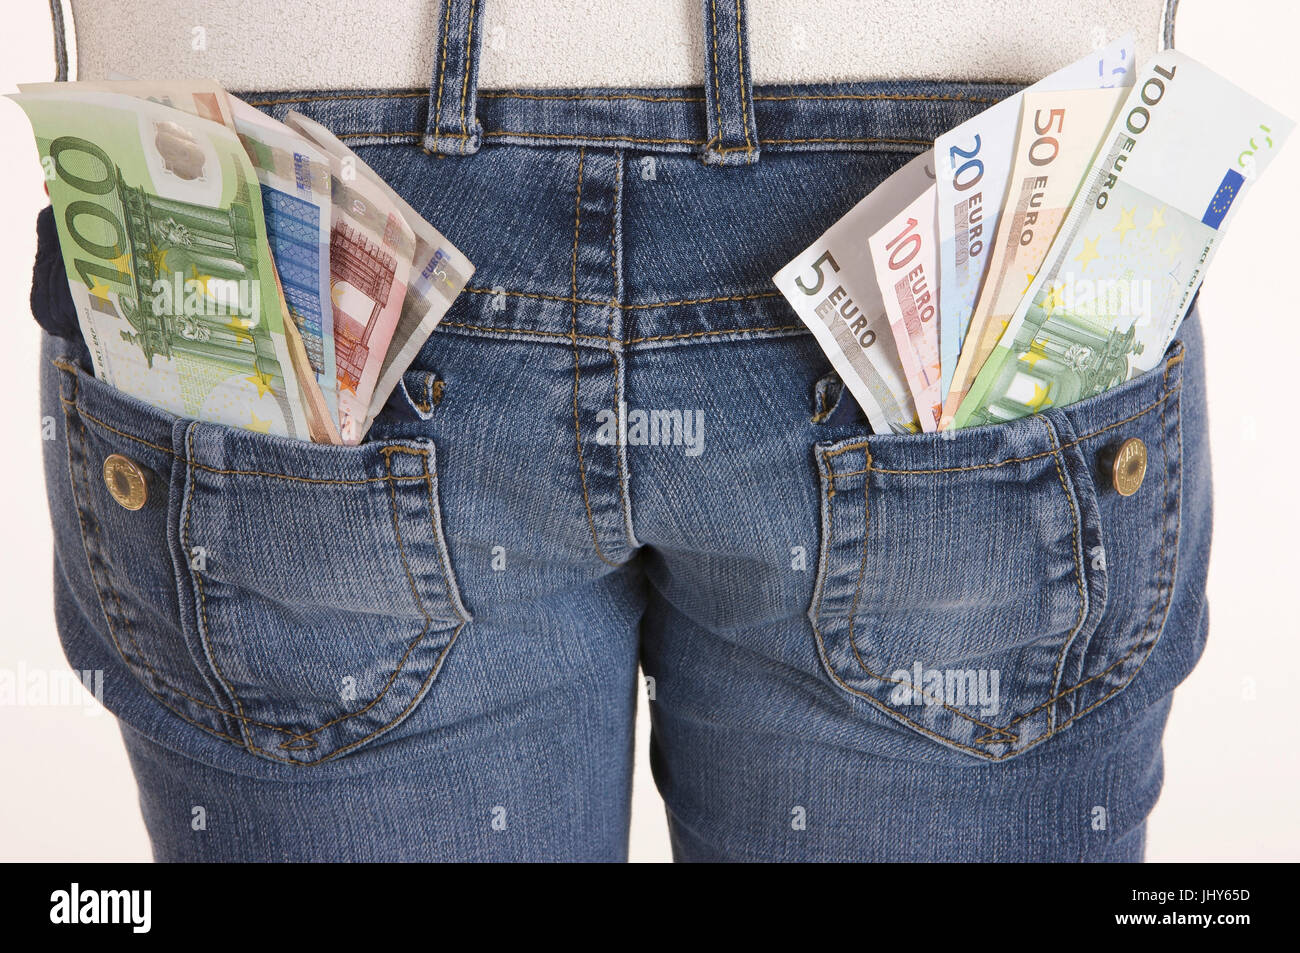 Pocket money - pocket money one, Taschengeld - pocket-money Stock Photo